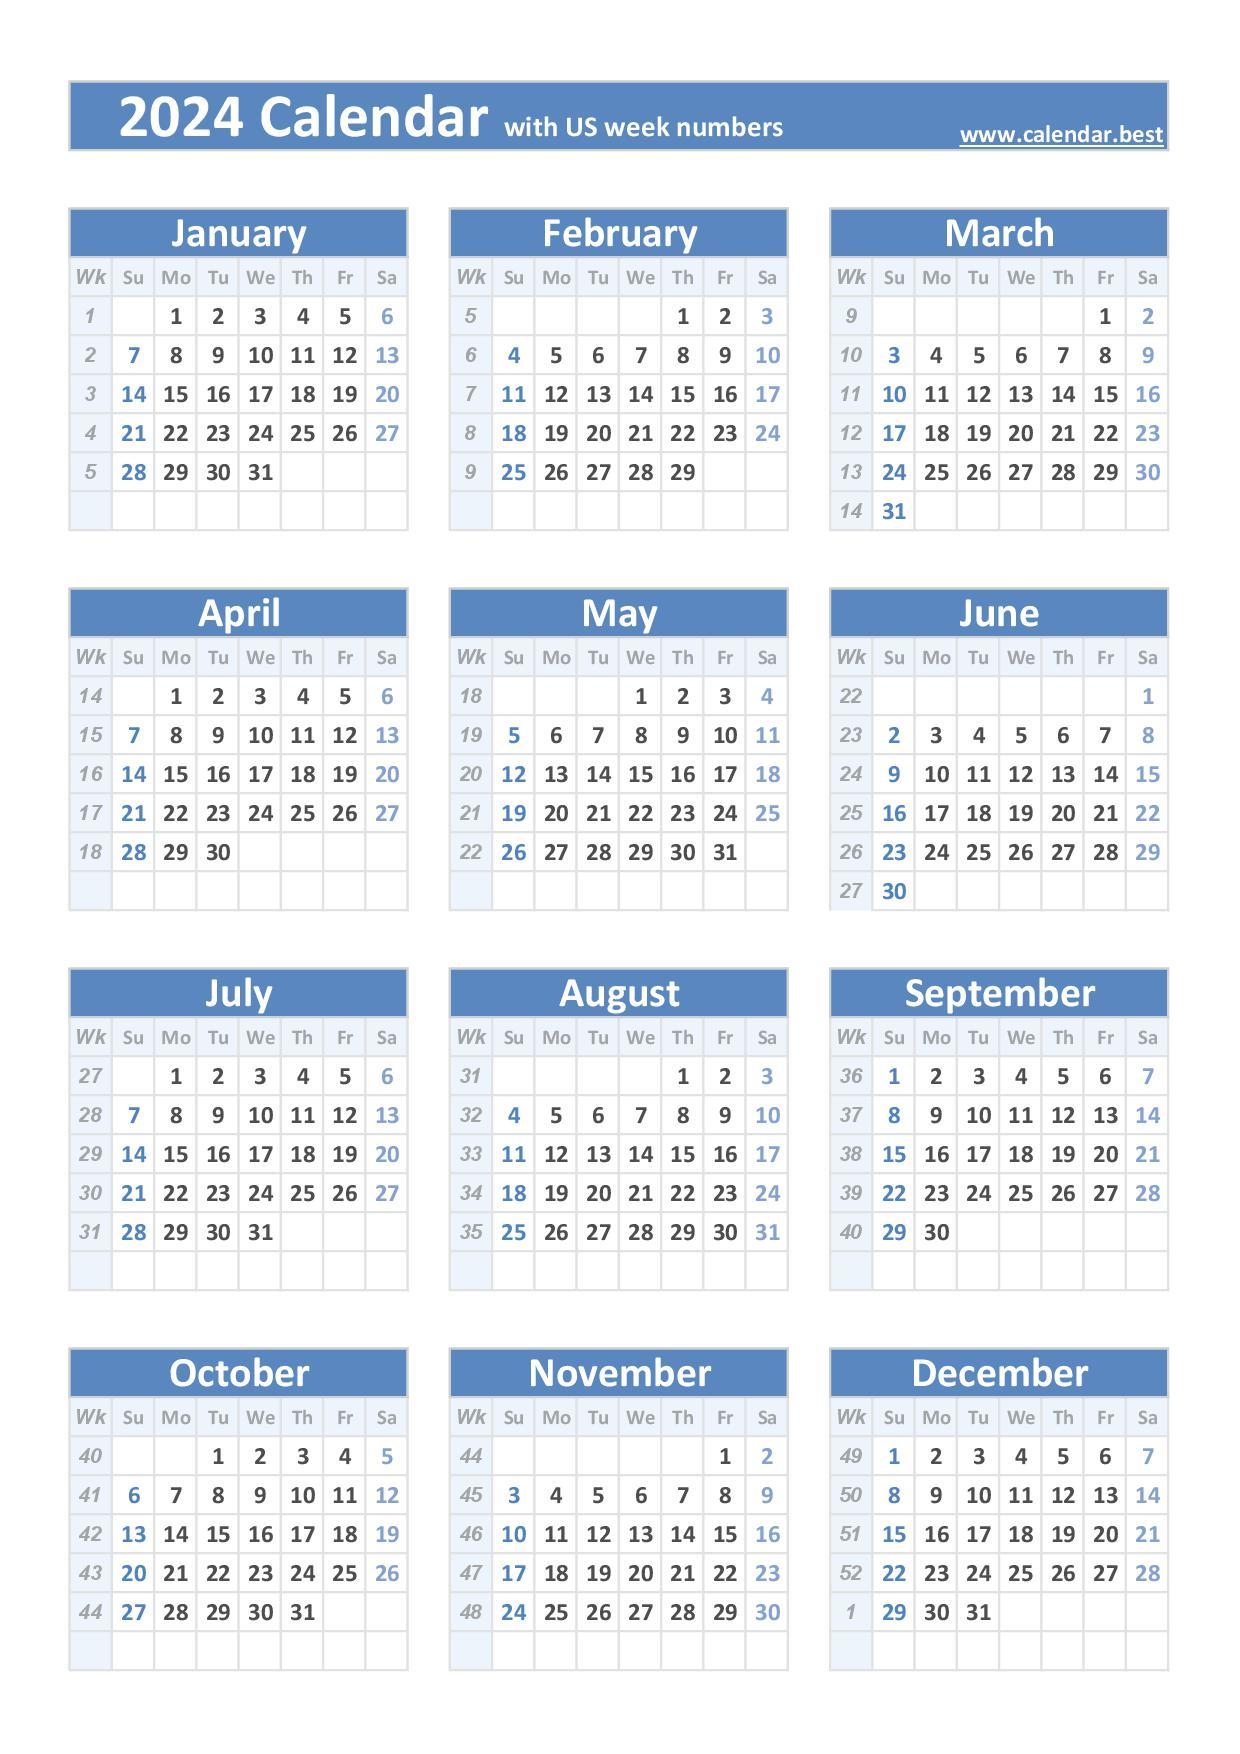 2024 Calendar With Week Numbers (Us And Iso Week Numbers) throughout Free Printable Calendar 2024 2 Week